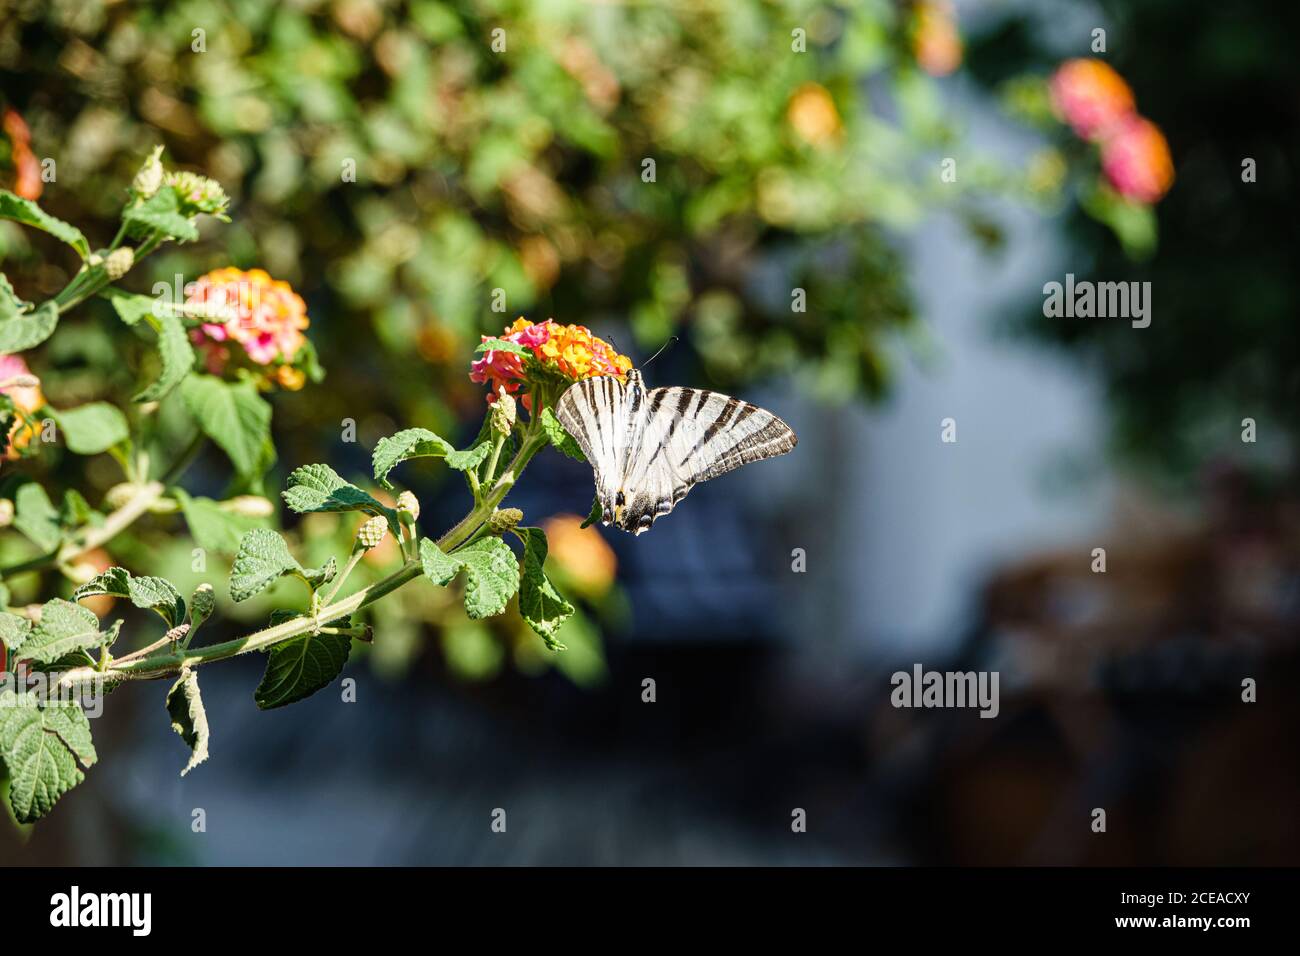 Butterfly on flower, harbinger of summer. Stock Photo